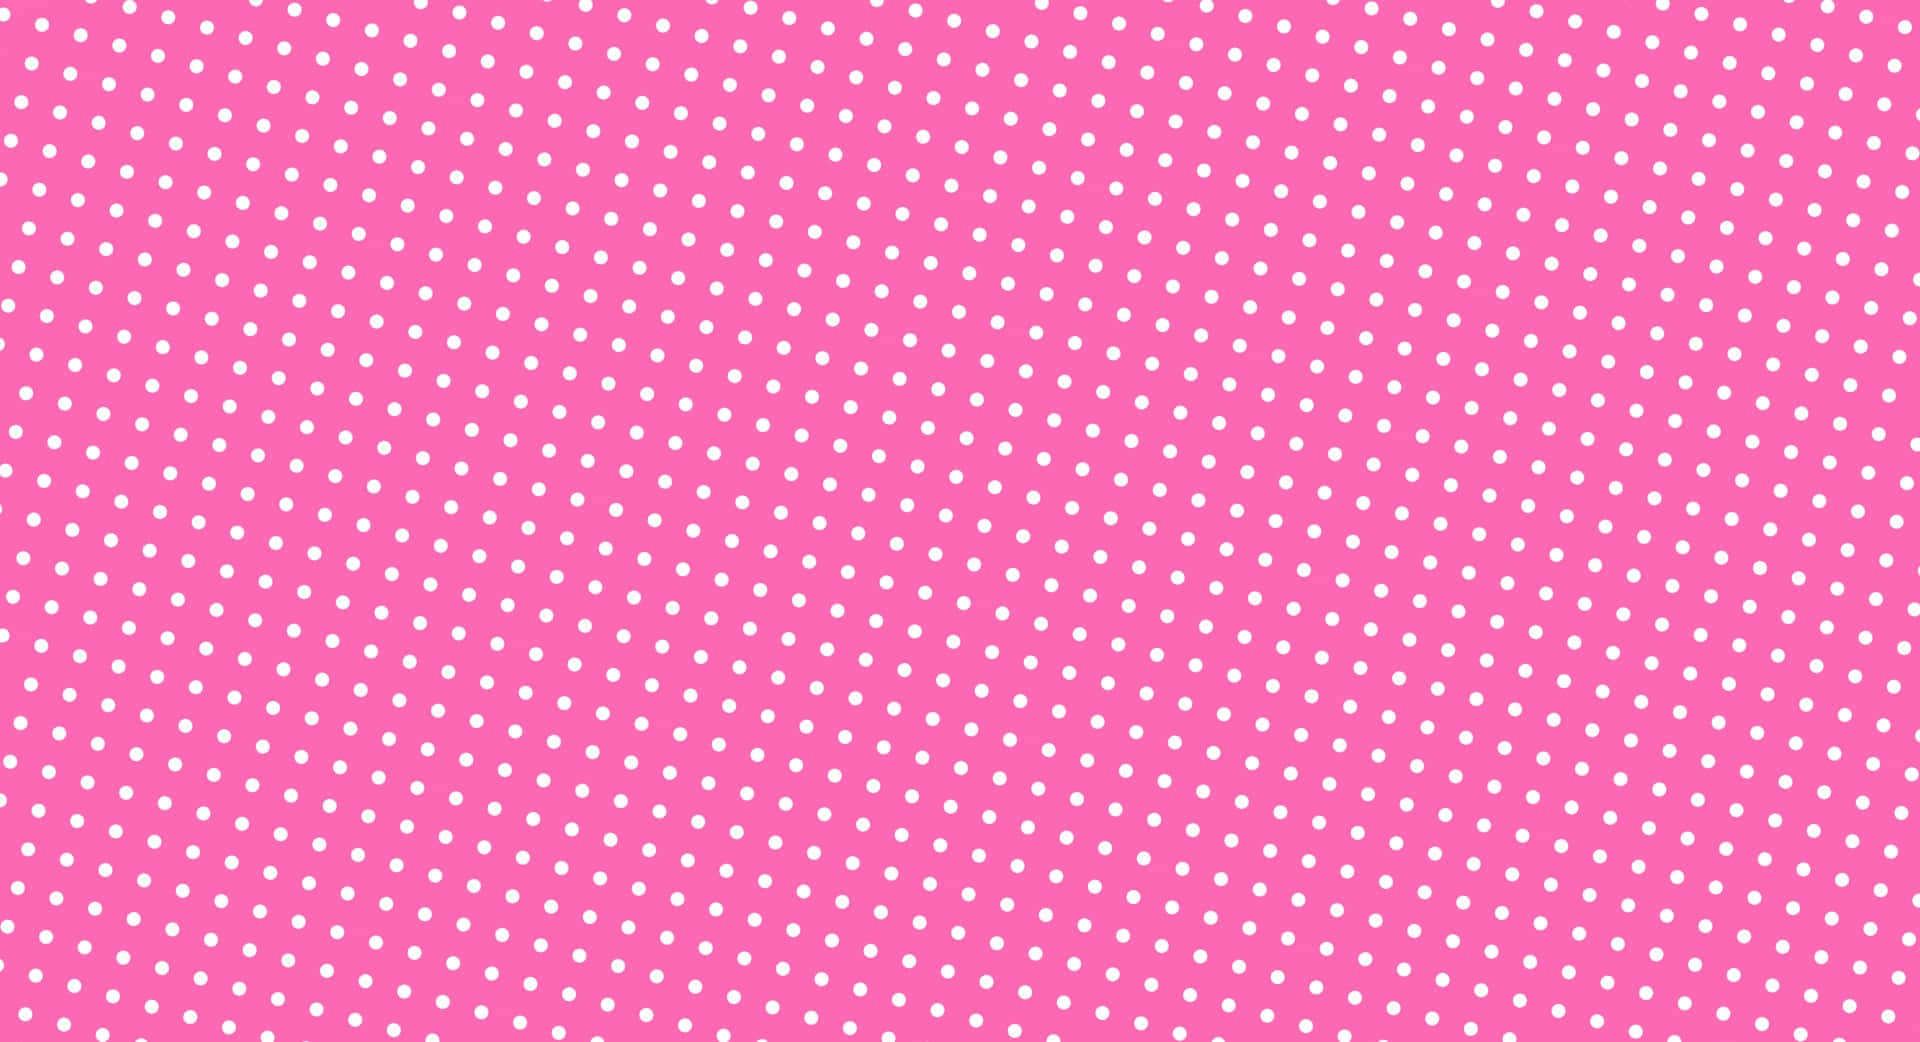 Pretty Pink and White Polka Dot Pattern Wallpaper